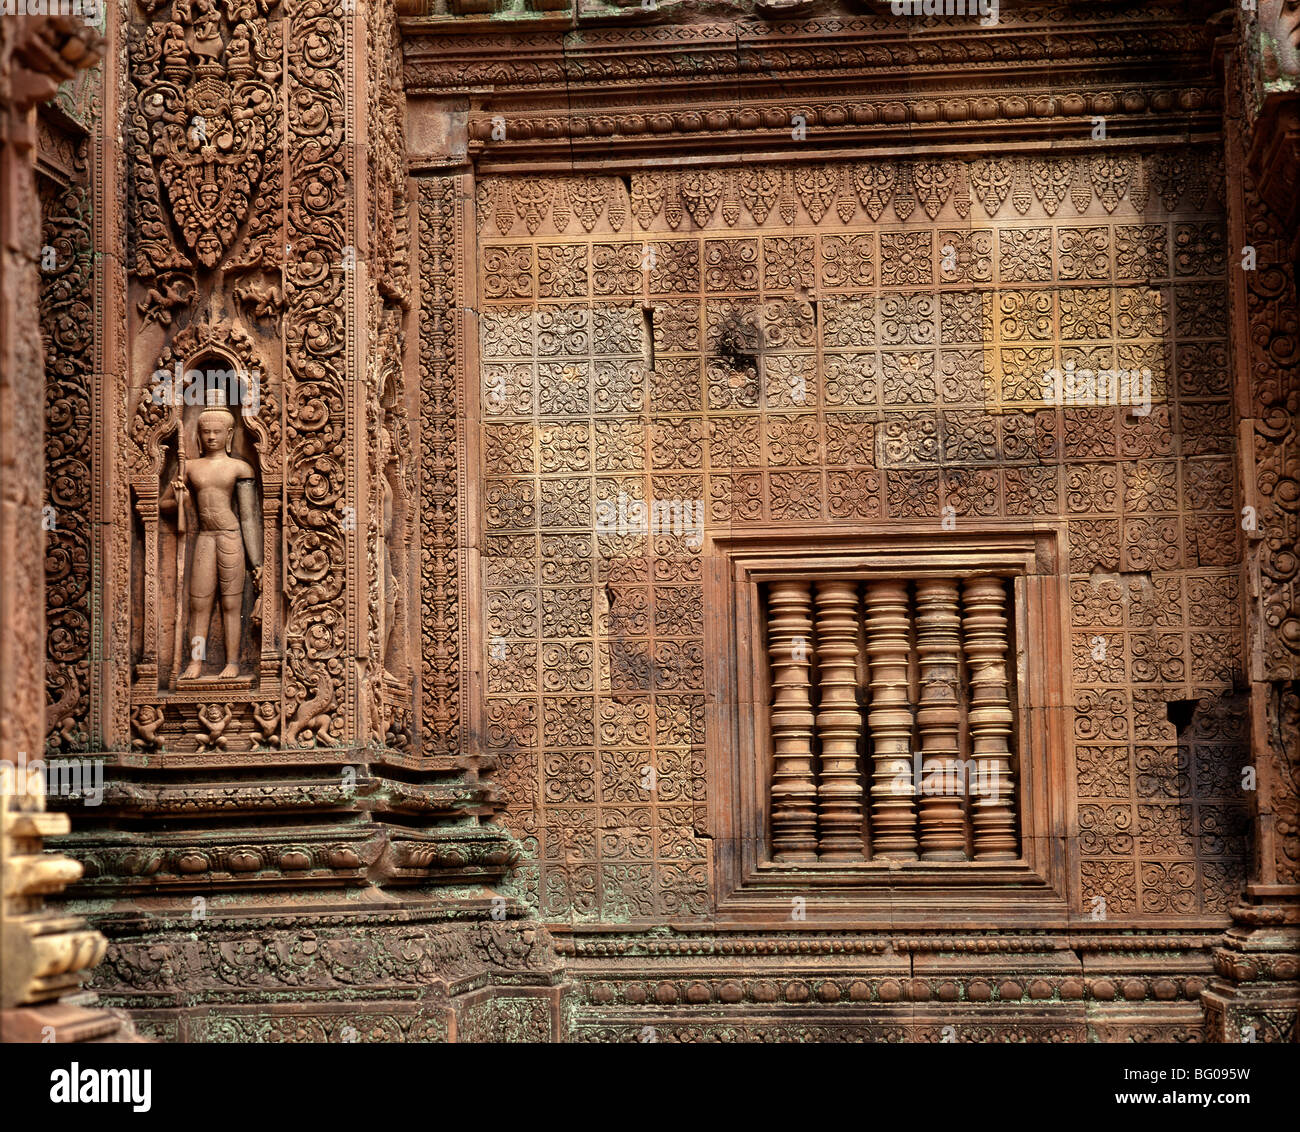 Banteay Srei, stammt aus der zweiten Hälfte des 10. Jahrhundert, Angkor, UNESCO World Heritage Site, Kambodscha, Indochina, Asien Stockfoto